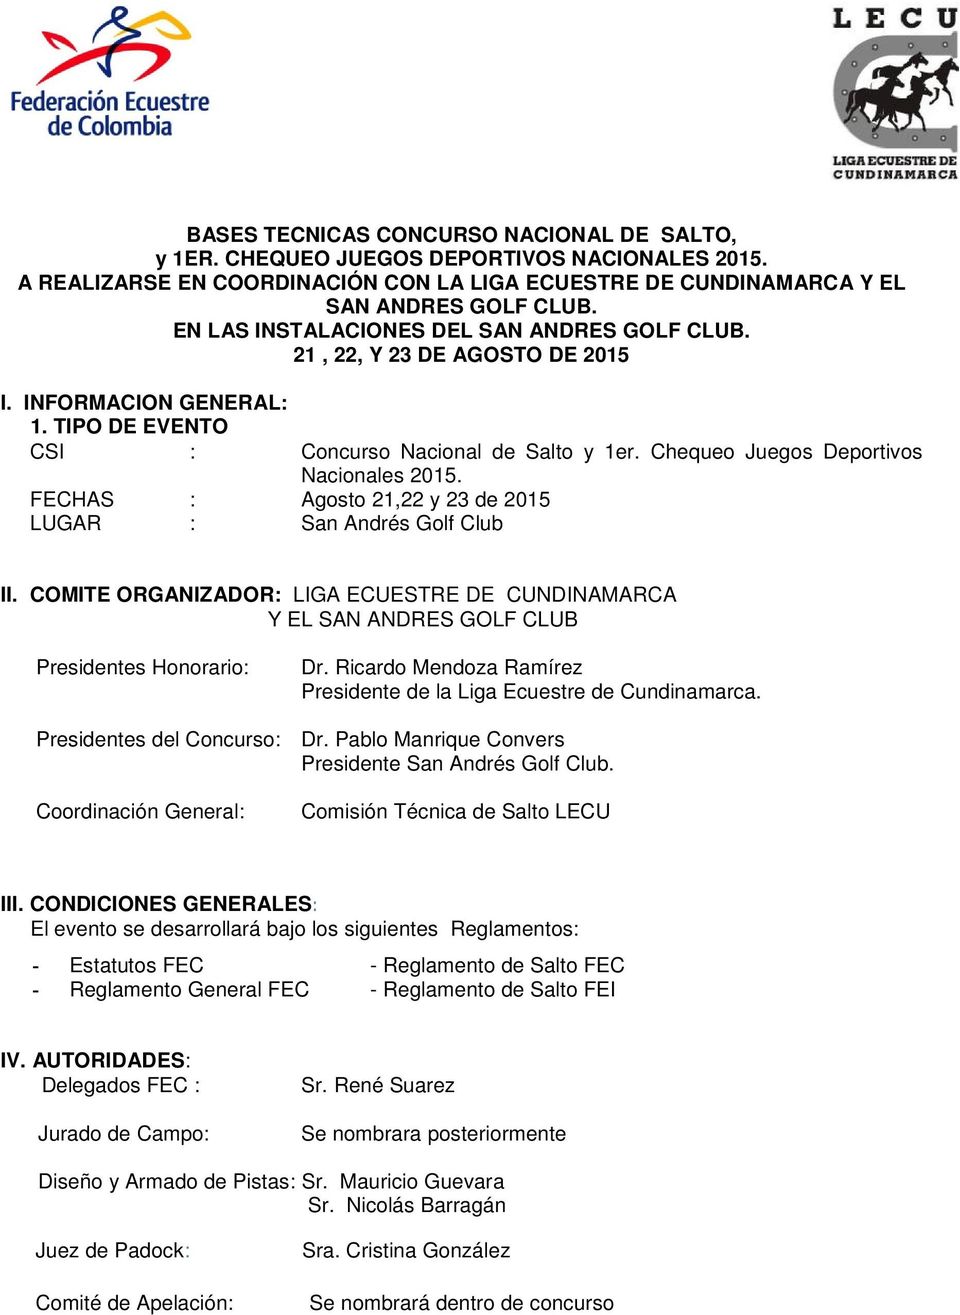 Chequeo Juegos Deportivos Nacionales 2015. FECHAS : Agosto 21,22 y 23 de 2015 LUGAR : San Andrés Golf Club II.